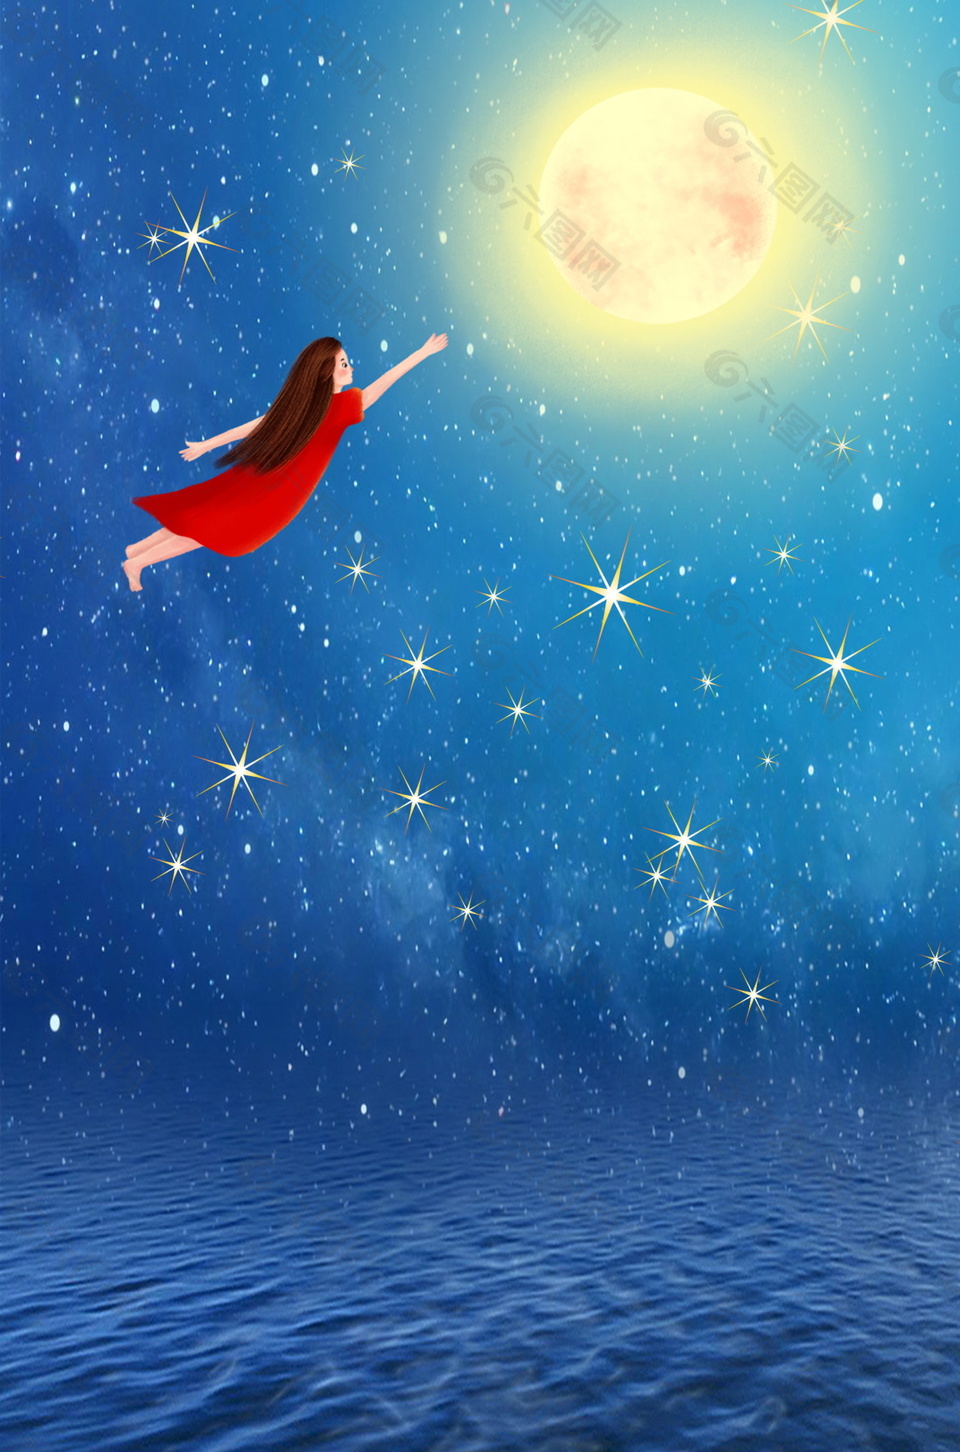 彩绘女孩飞向月亮仲夏之夜背景素材